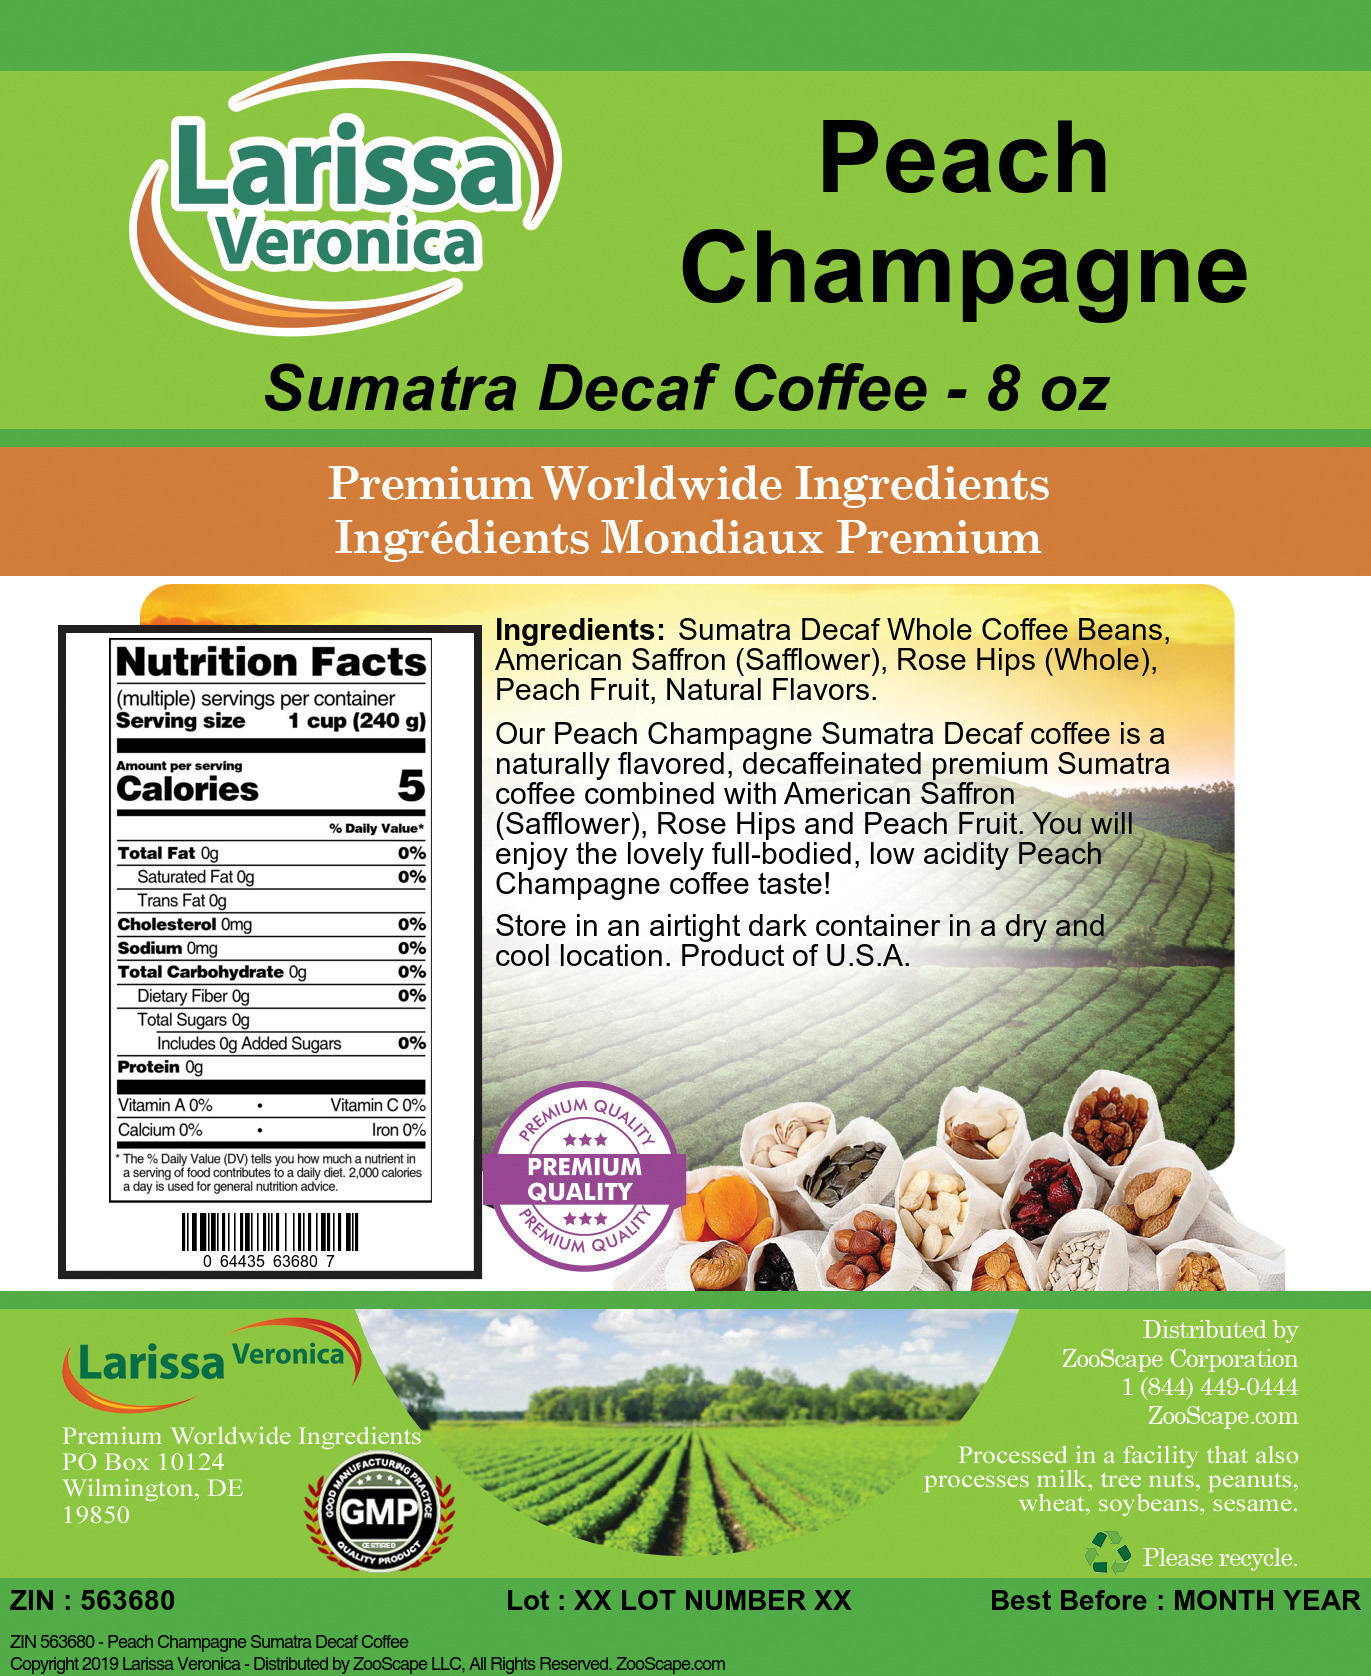 Peach Champagne Sumatra Decaf Coffee - Label